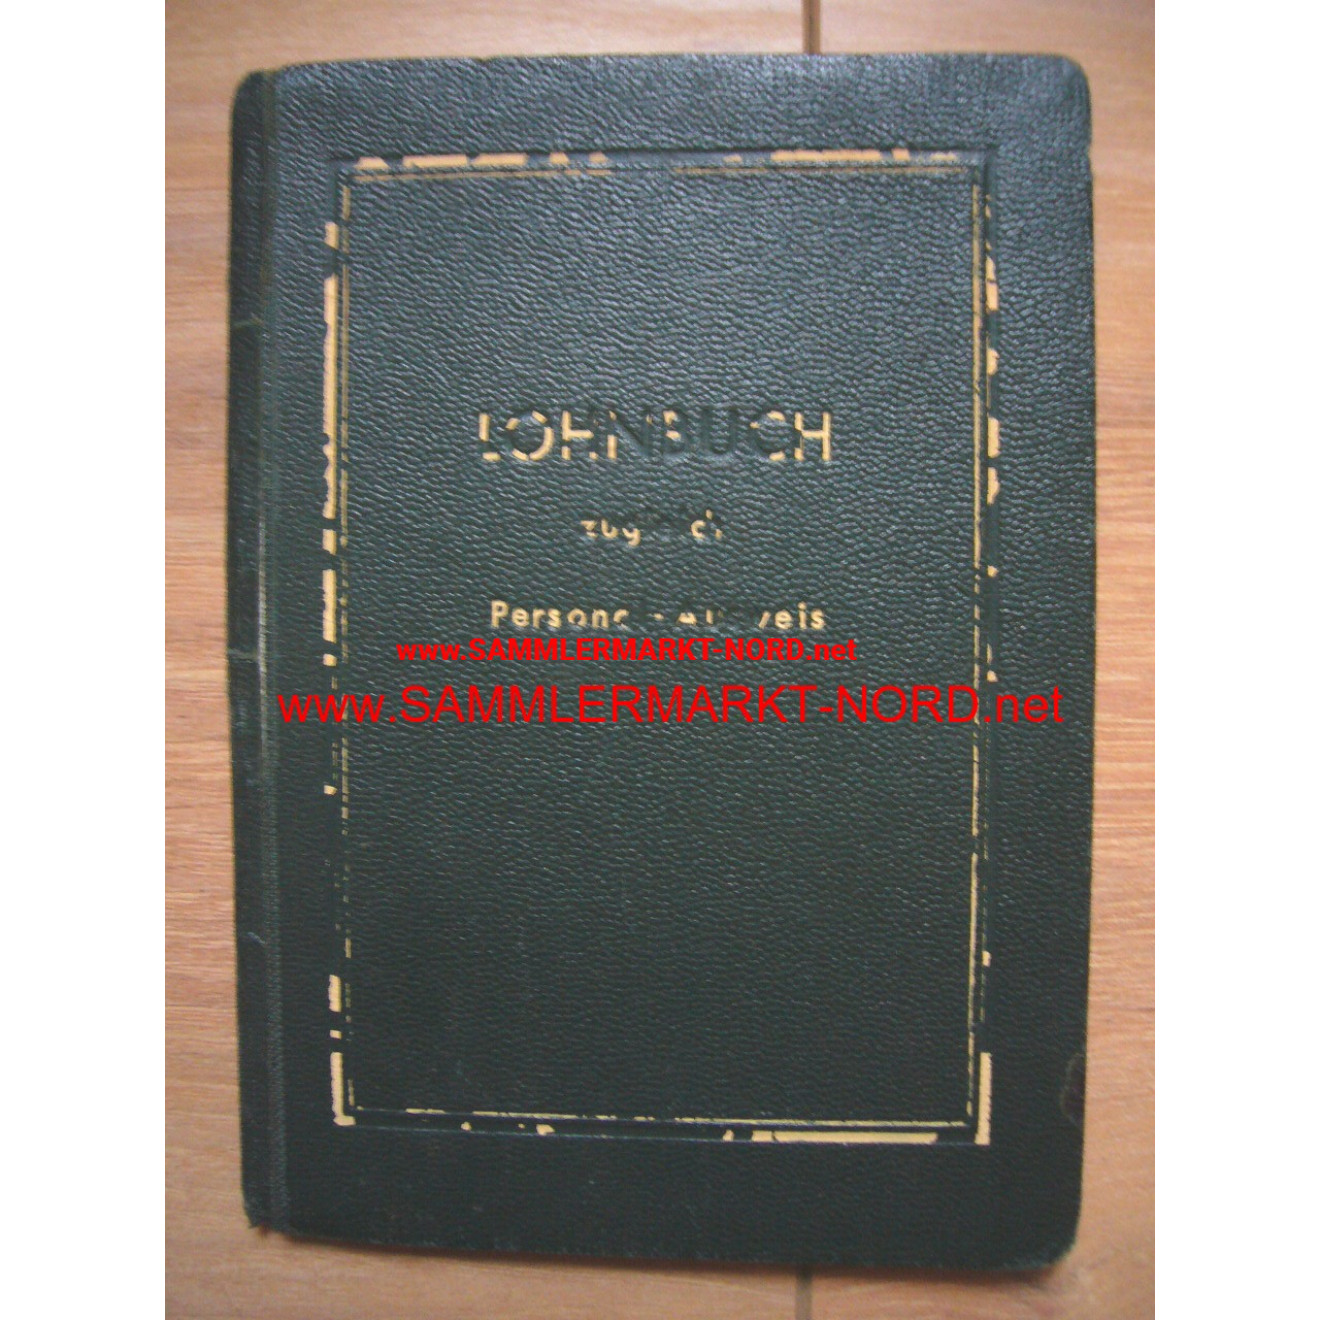 Reichsluftfahrtministerium (RLM) - Wage book / Passport